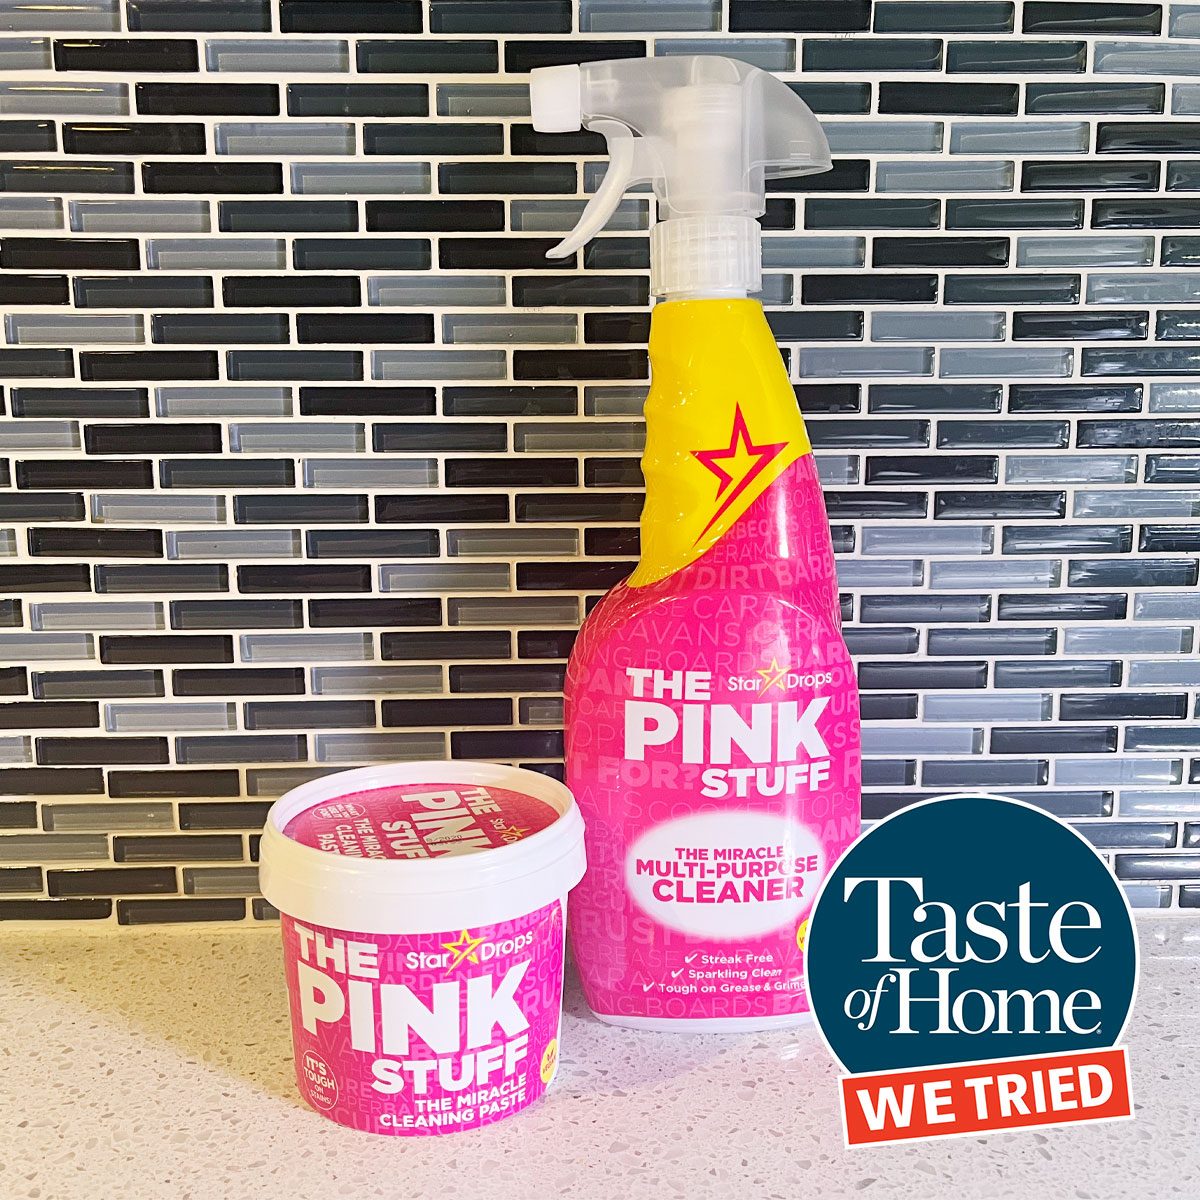 The Pink Stuff vs oven spray #thepinkstuff #thepinkstuffcleaning